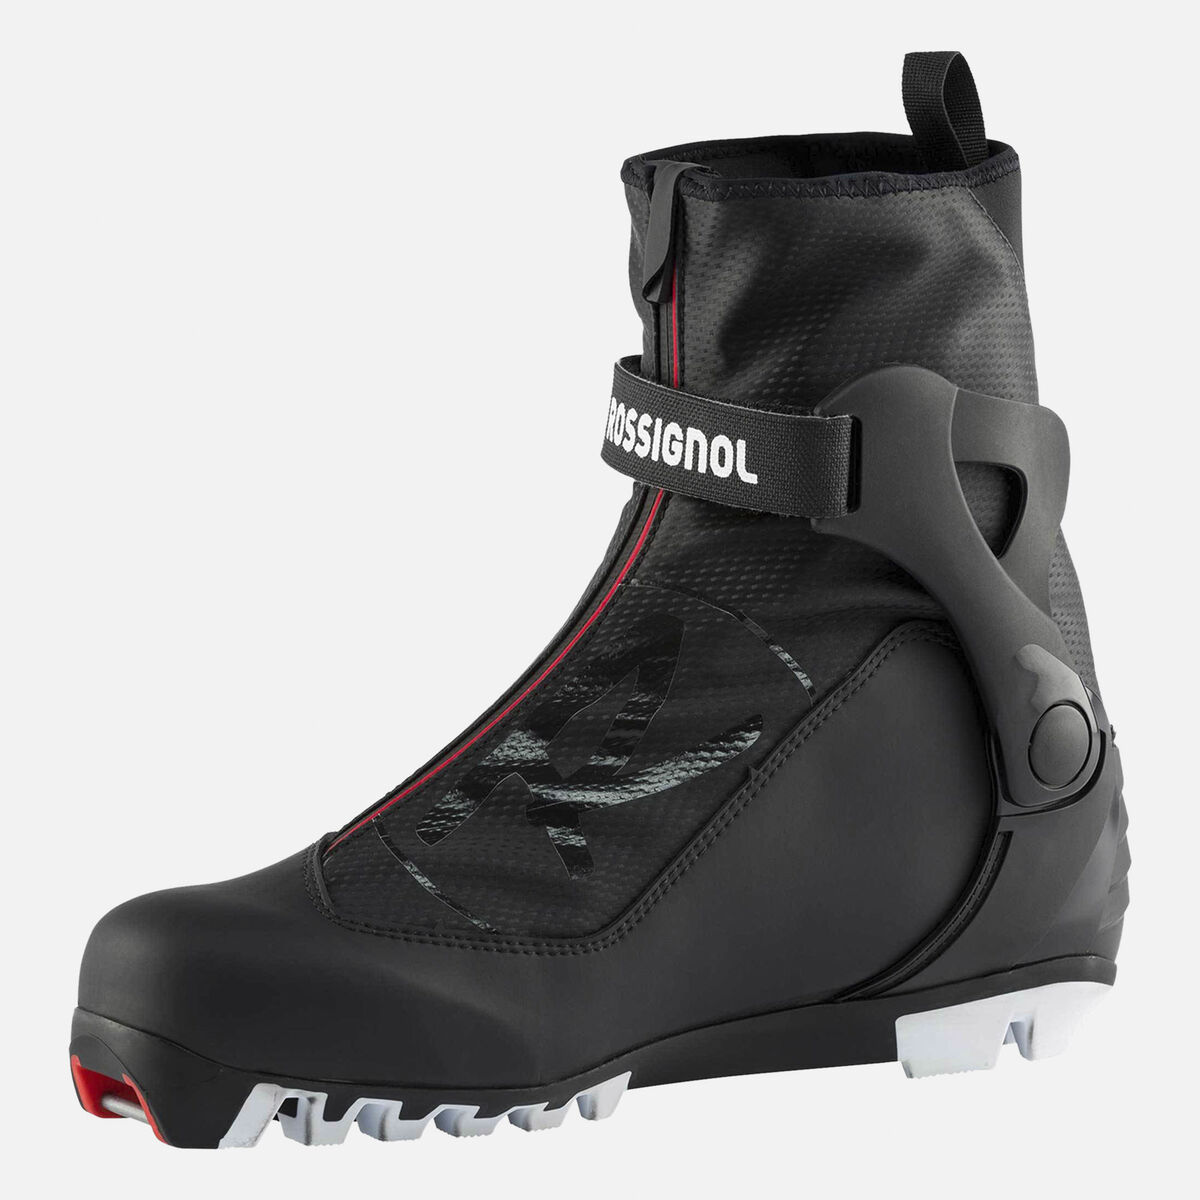 Chaussures de ski nordique Skating Et Classique Homme X-6 Sc